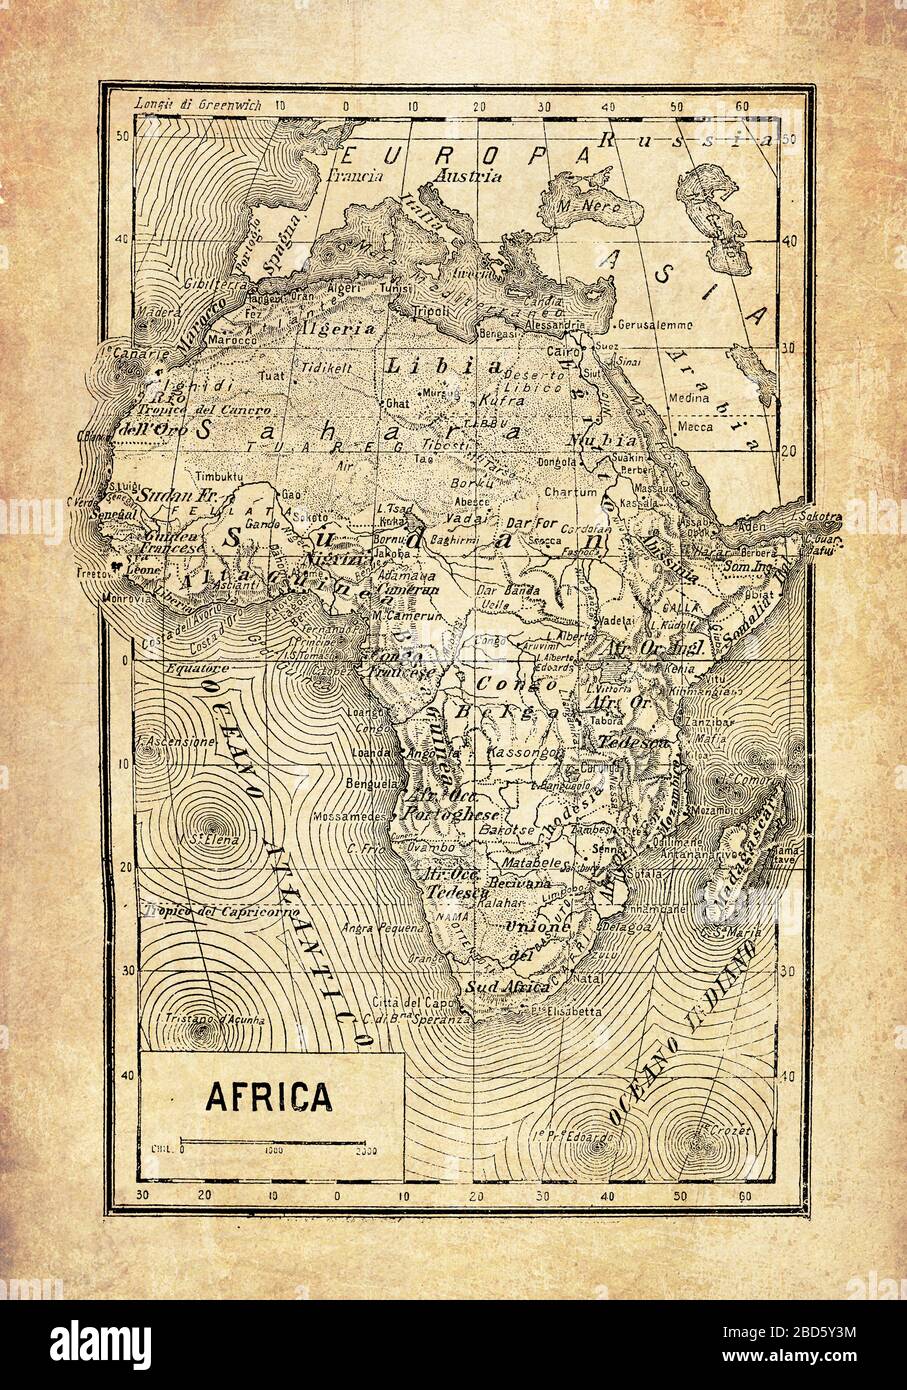 Ancienne carte du continent africain avec noms et descriptions géographiques italiens Banque D'Images